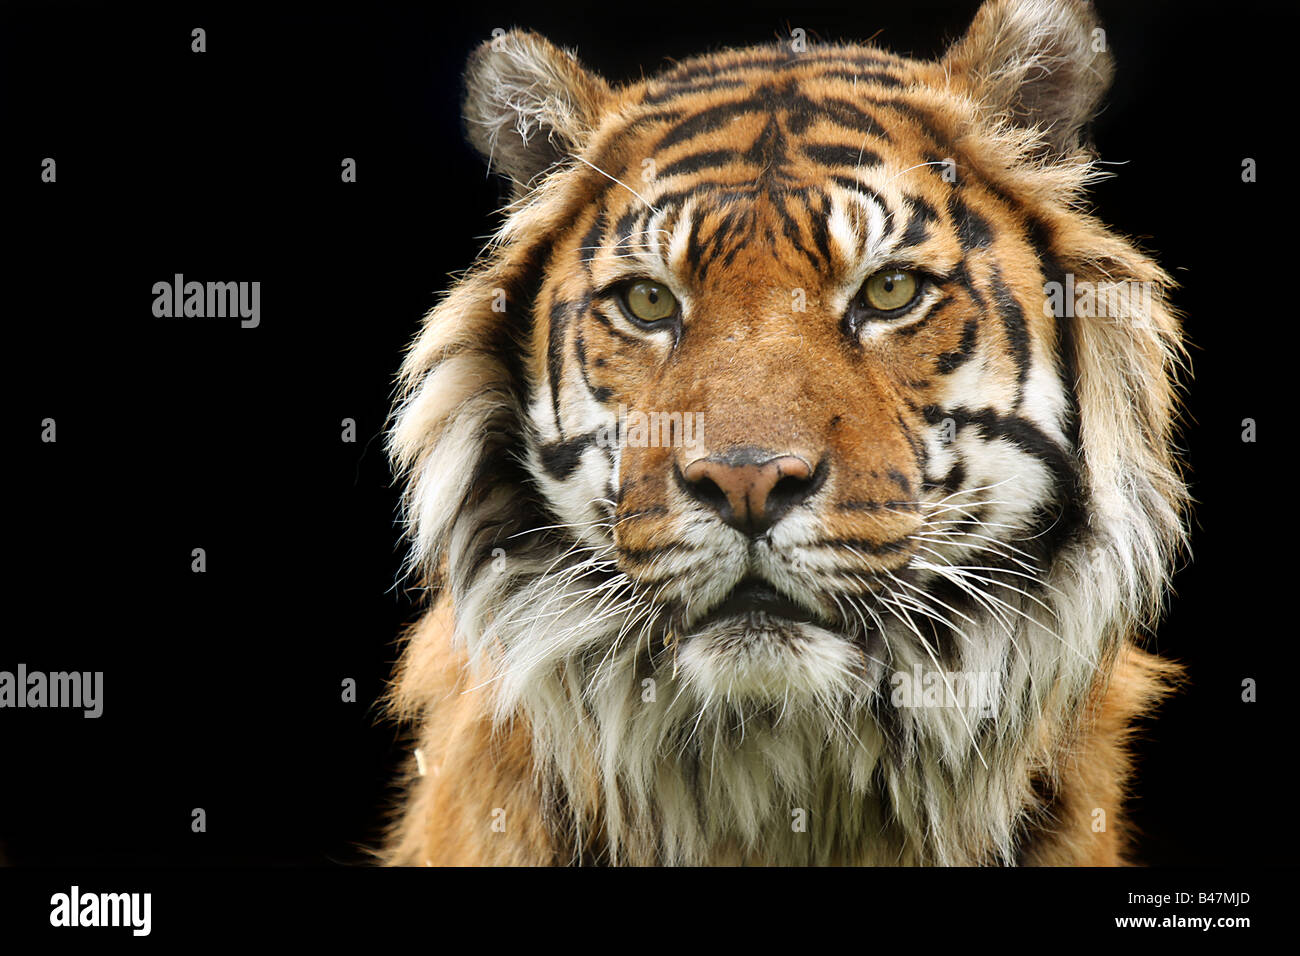 Closeup of a Sumatran Tiger Stock Photo